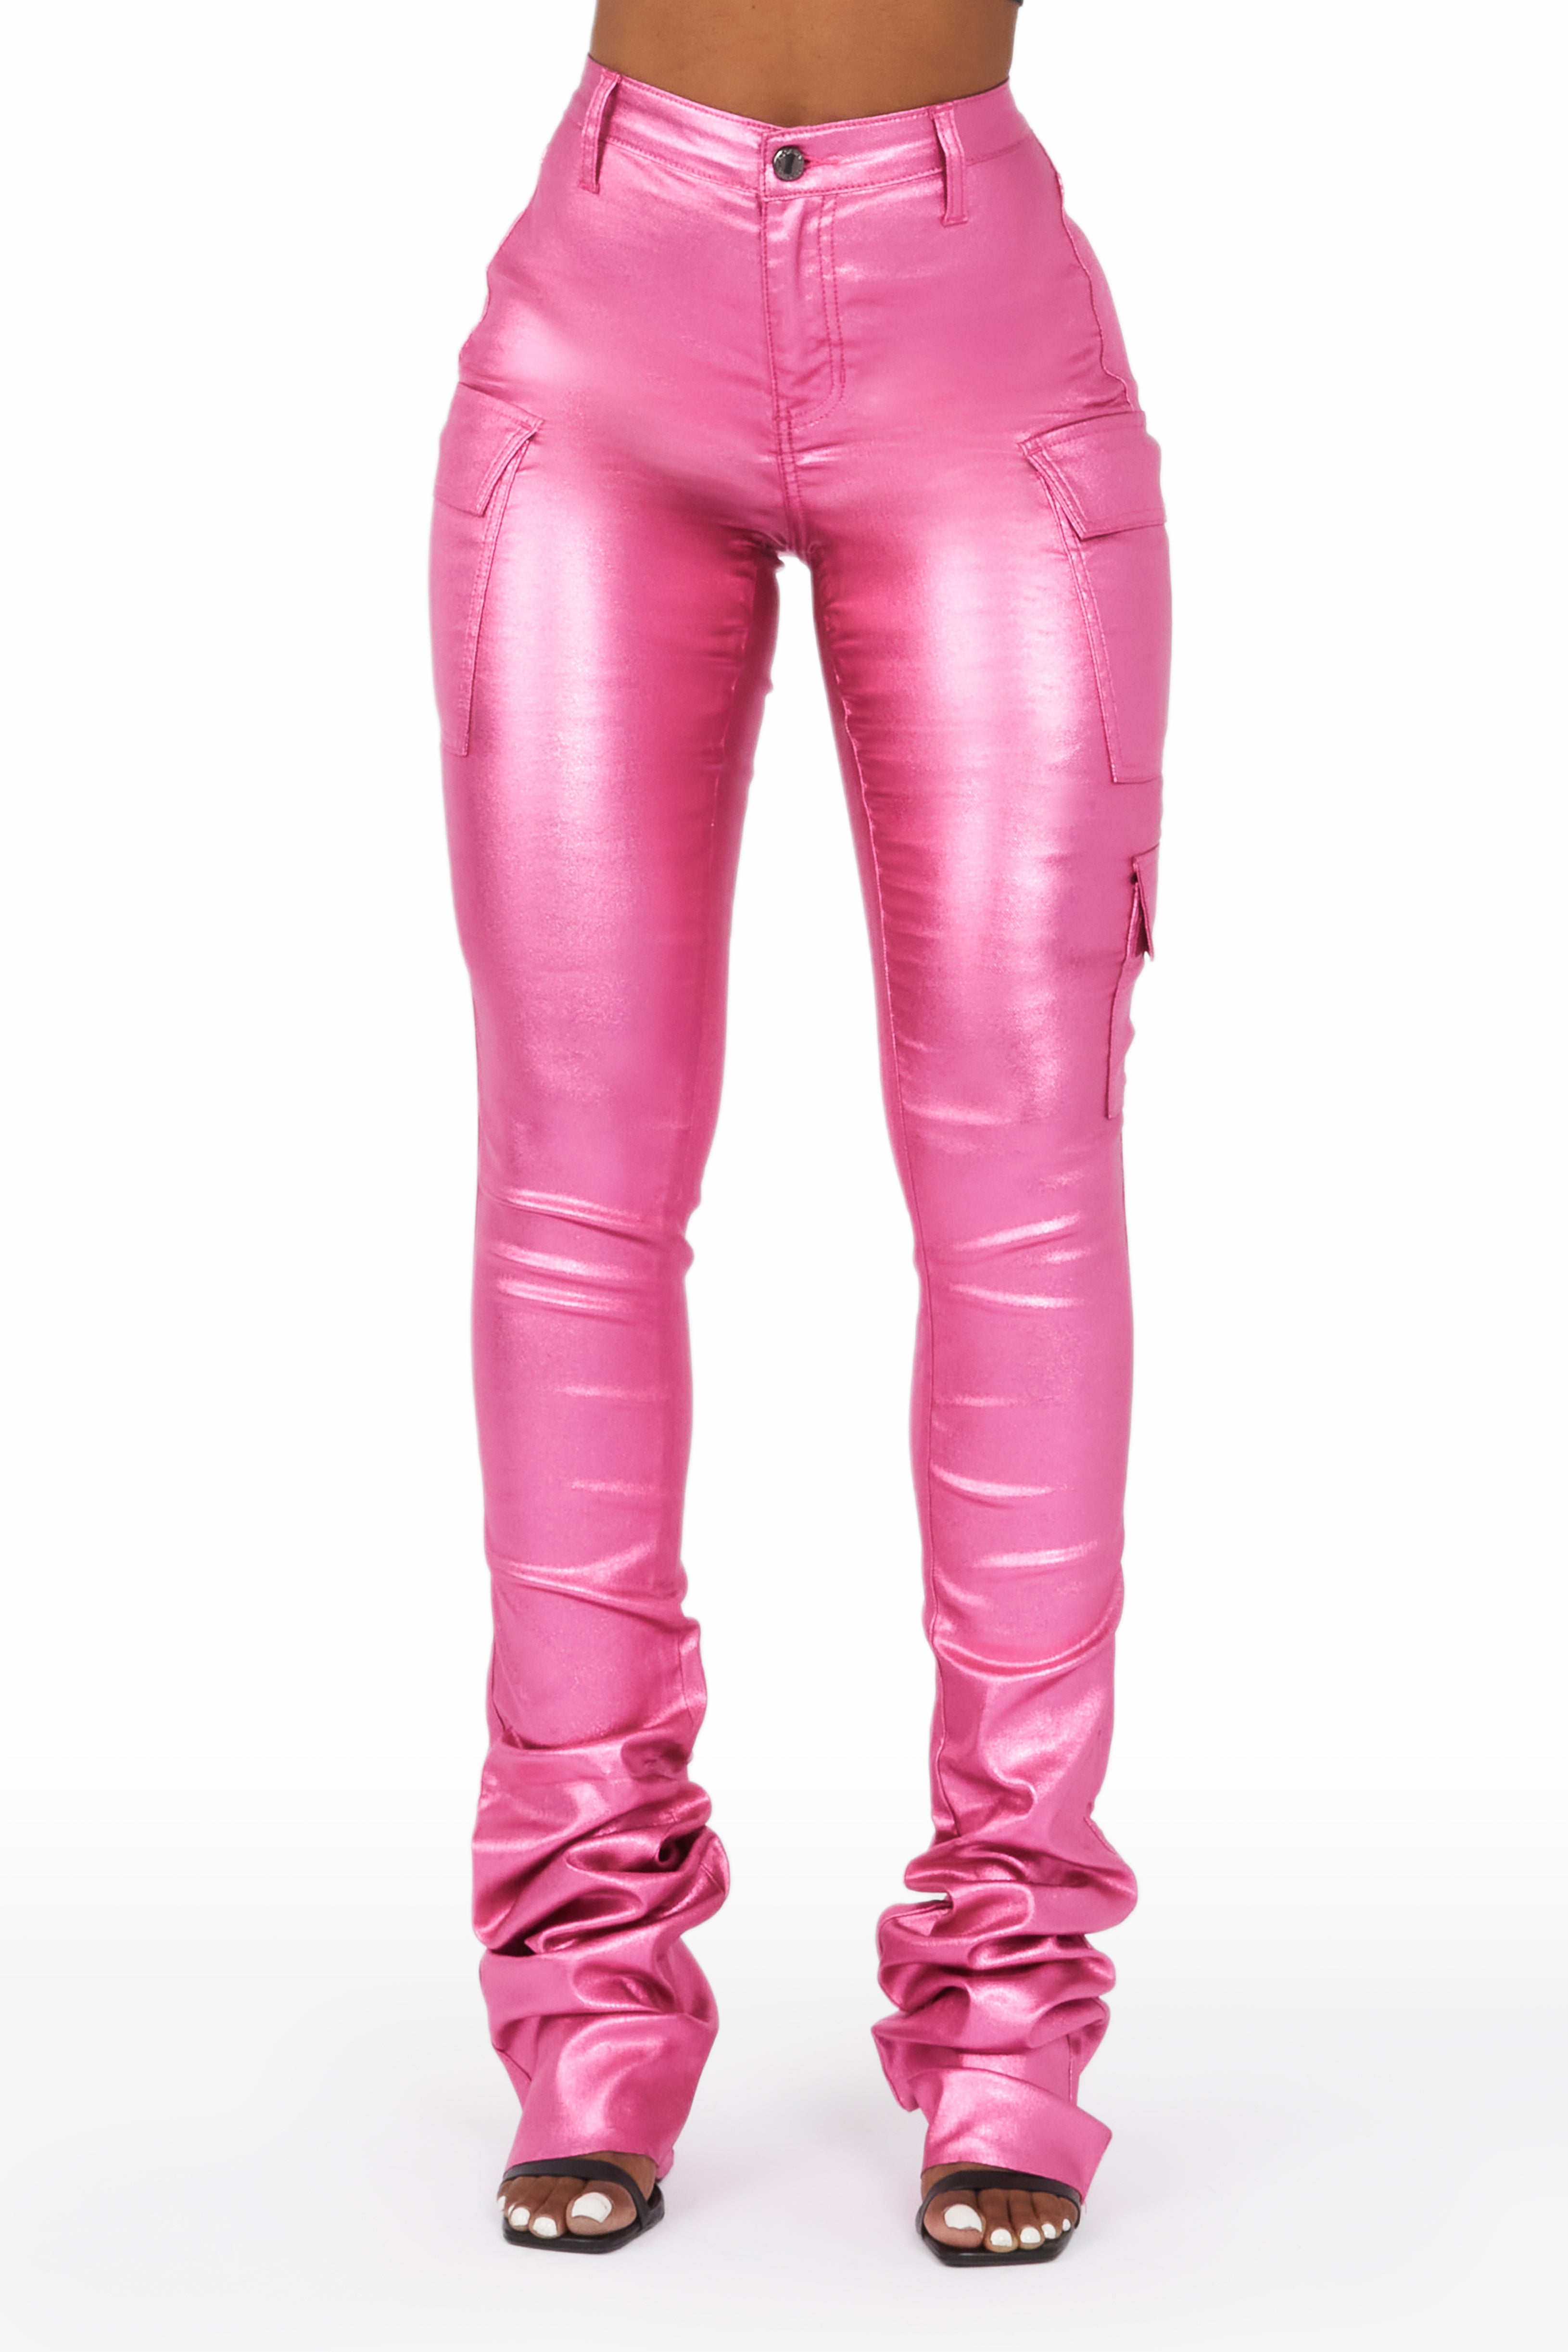 ArgosymineralsShops, Slim & Shape long-sleeve Jeans Online, Buy Women's Pink  Lift | Calça Feminina Legging Cós Alto Fitness